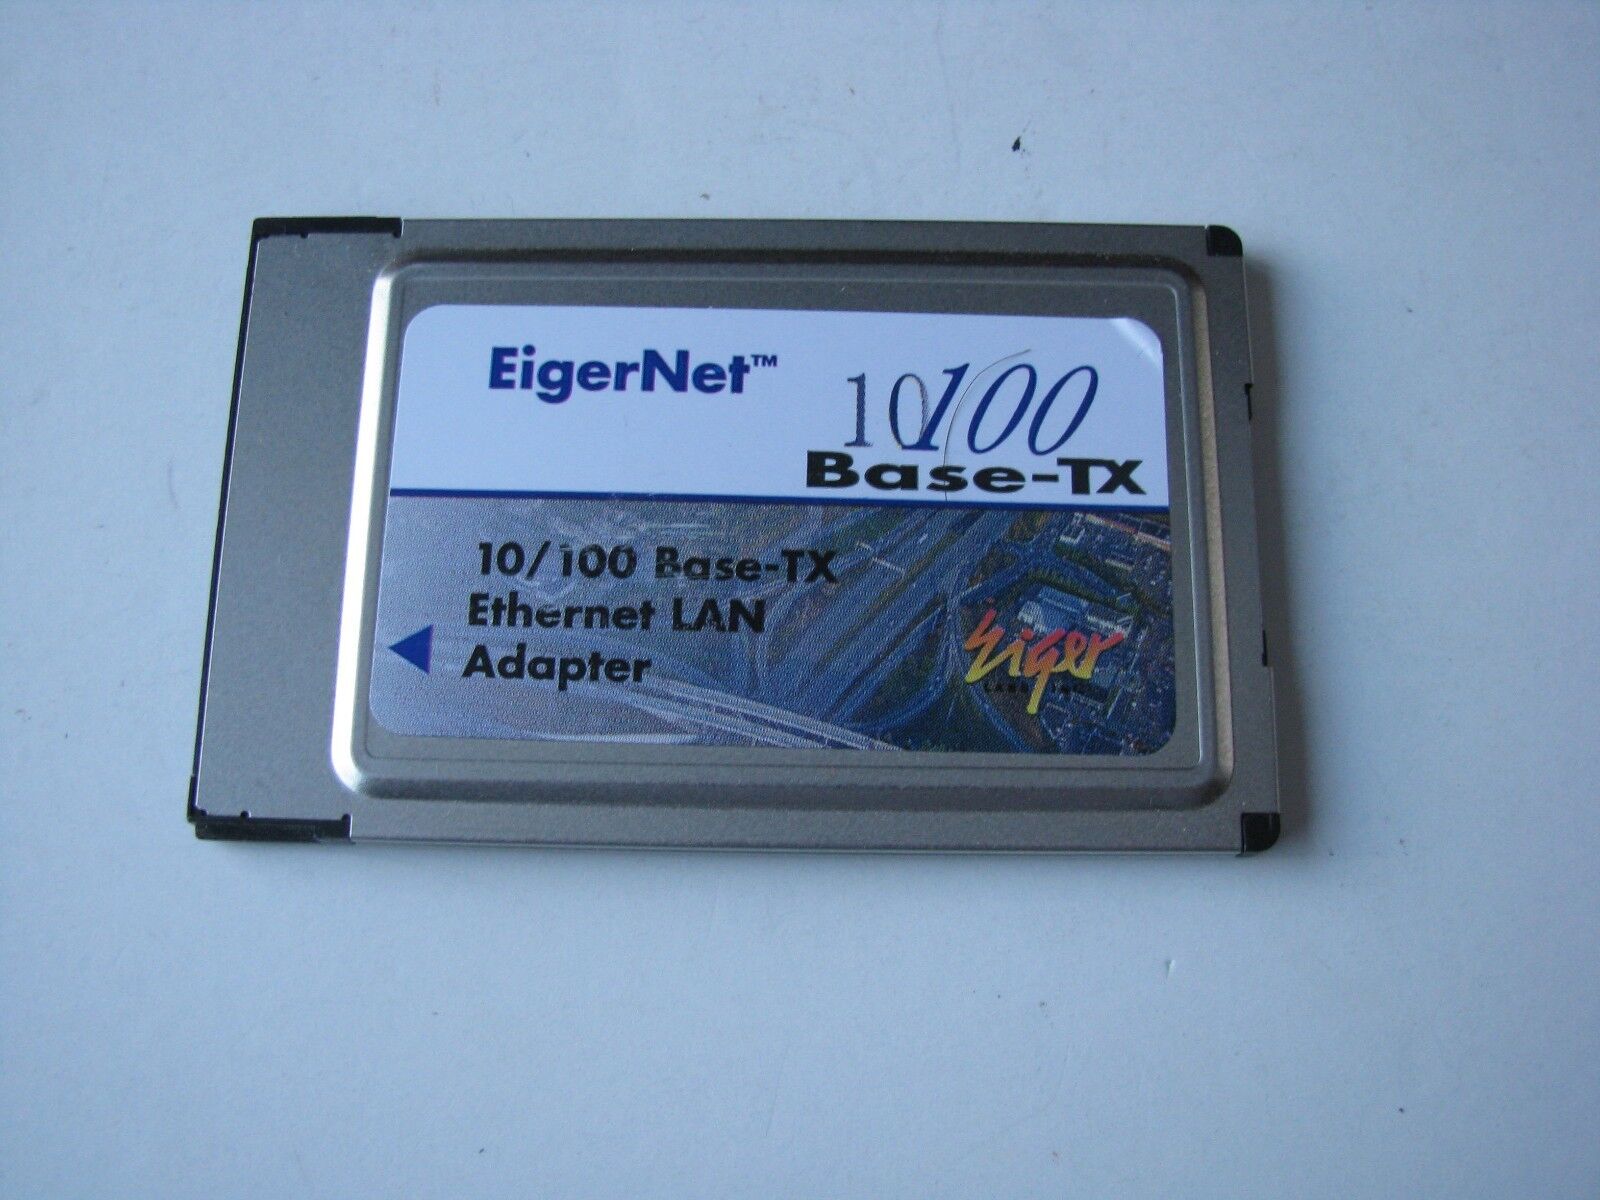 Vtg Old EigerNet Eiger Net 10/100 Base-TX PCMCIA Ethernet LAN Adapter PC Card